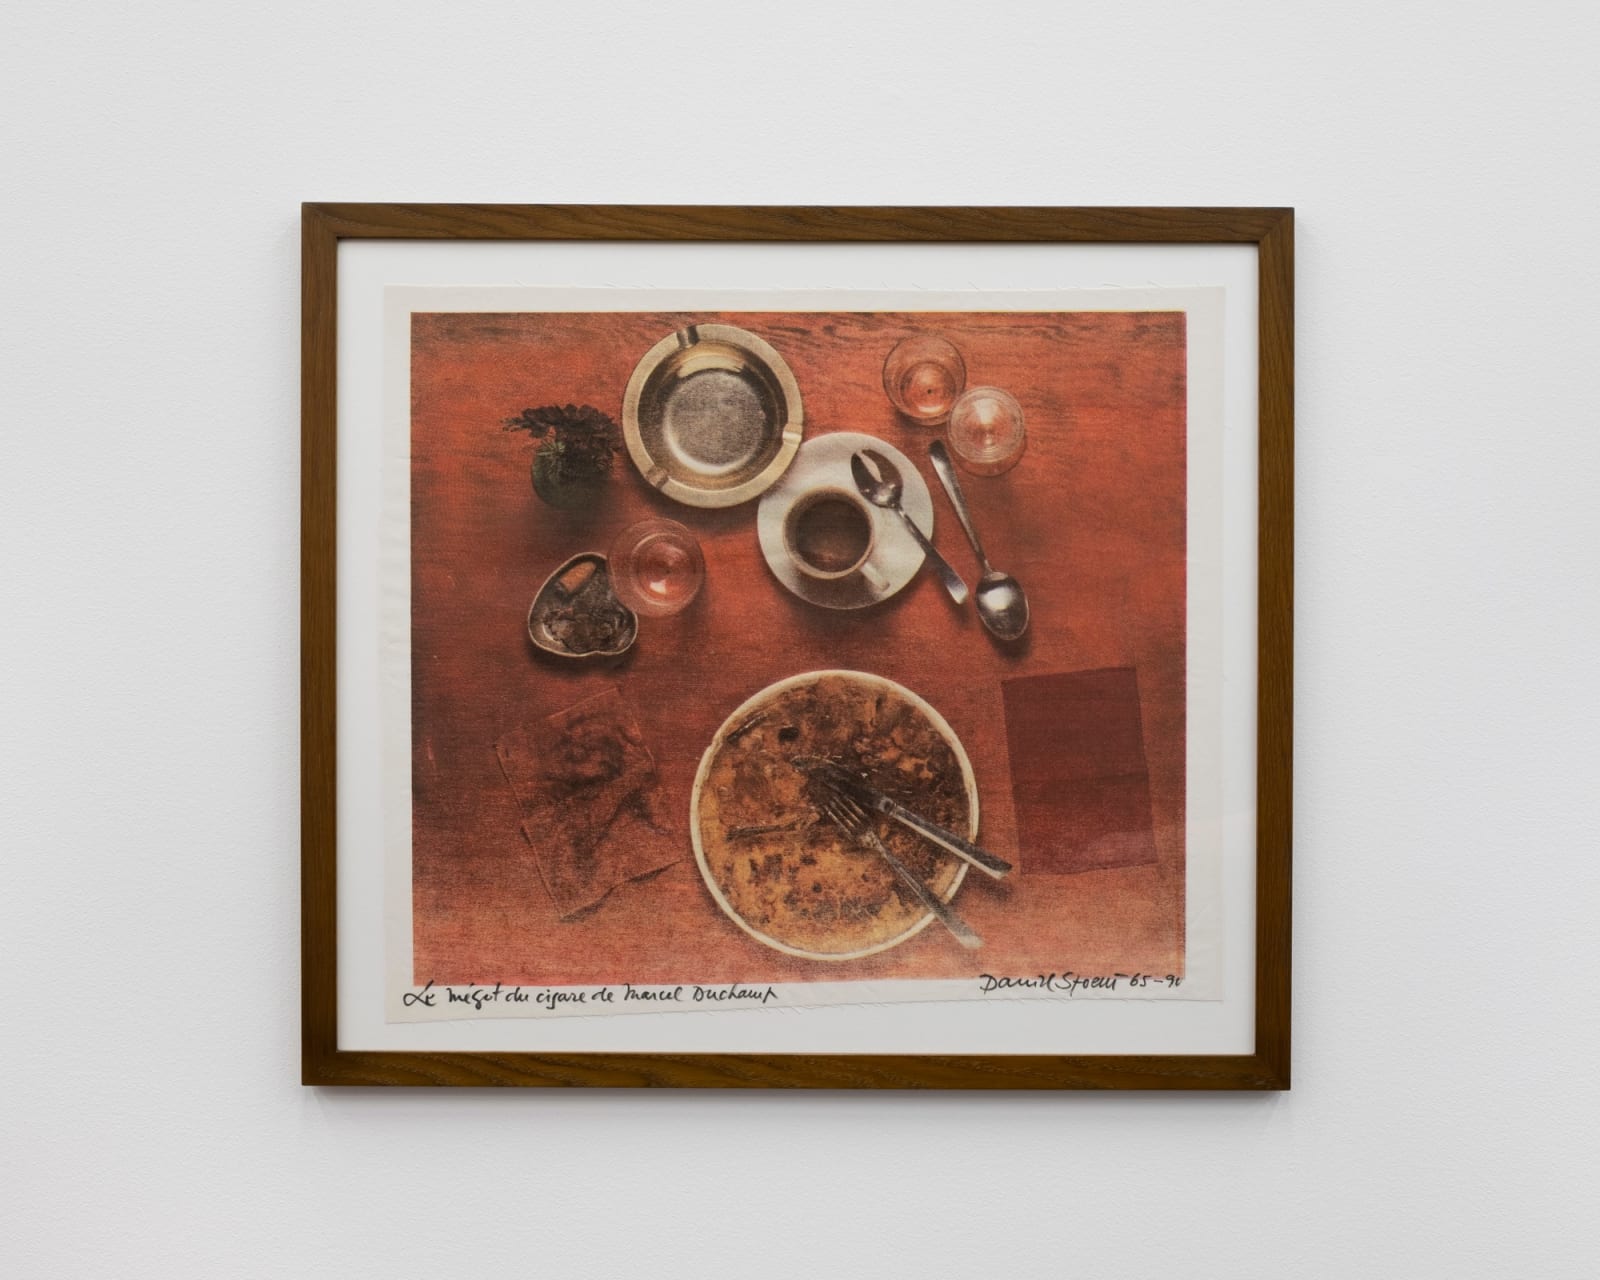 Daniel Spoerri, Eaten by Marcel Duchamp, 1964